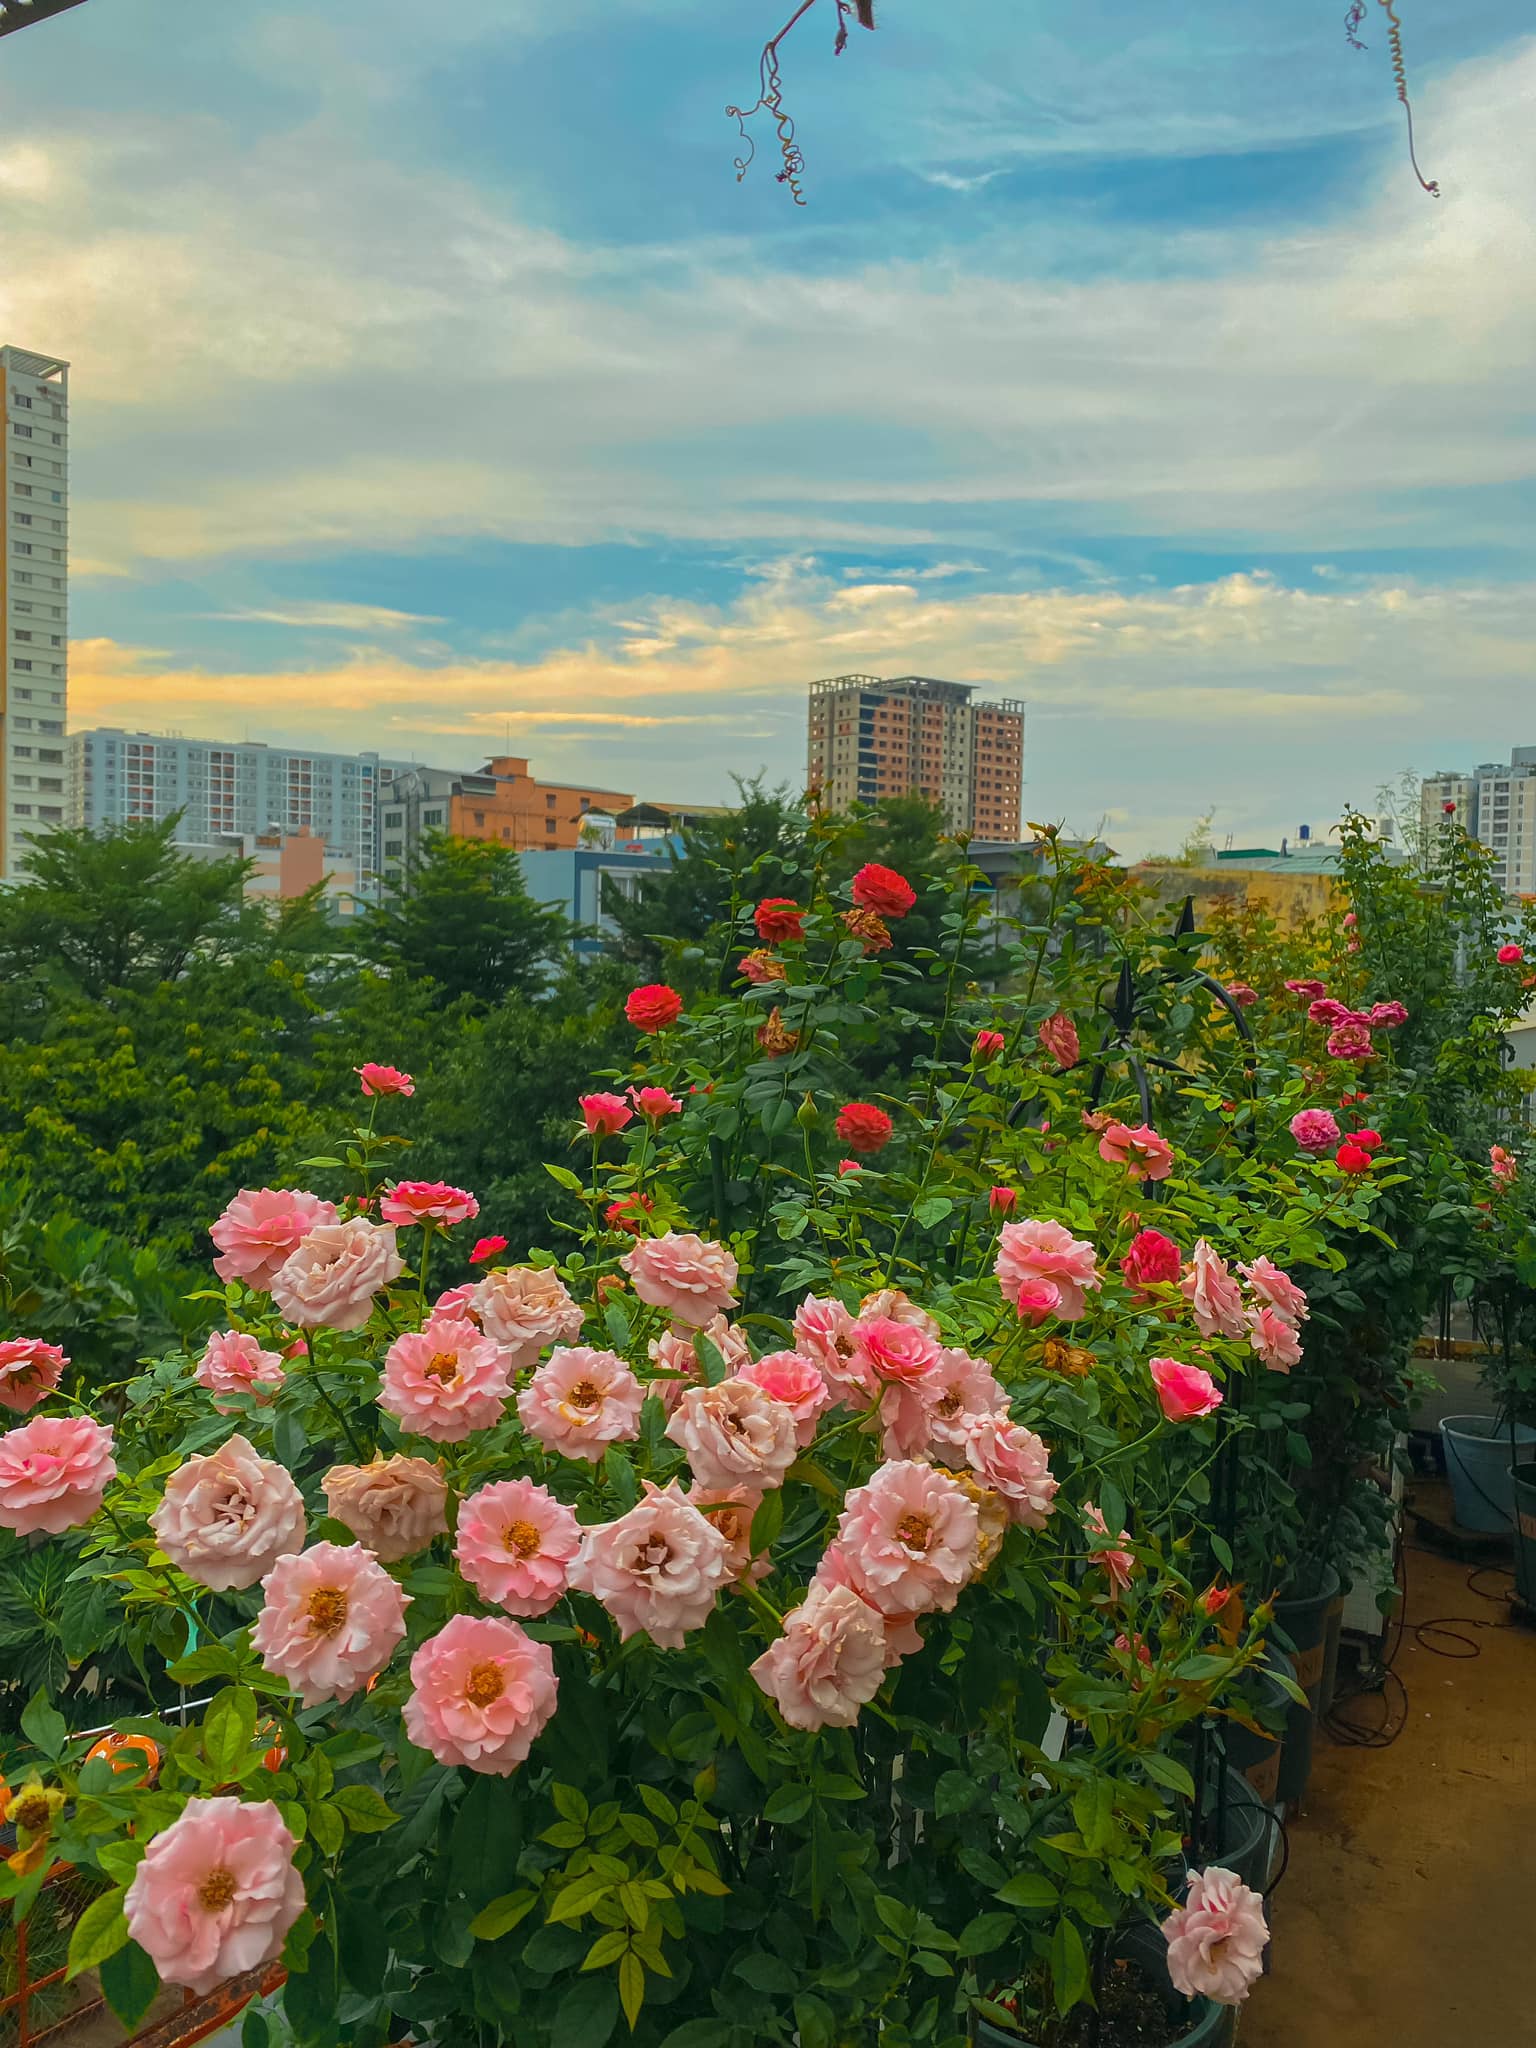 Khu vườn hoa hồng đẹp ngây ngất trên sân thượng ở TP HCM - Ảnh 5.